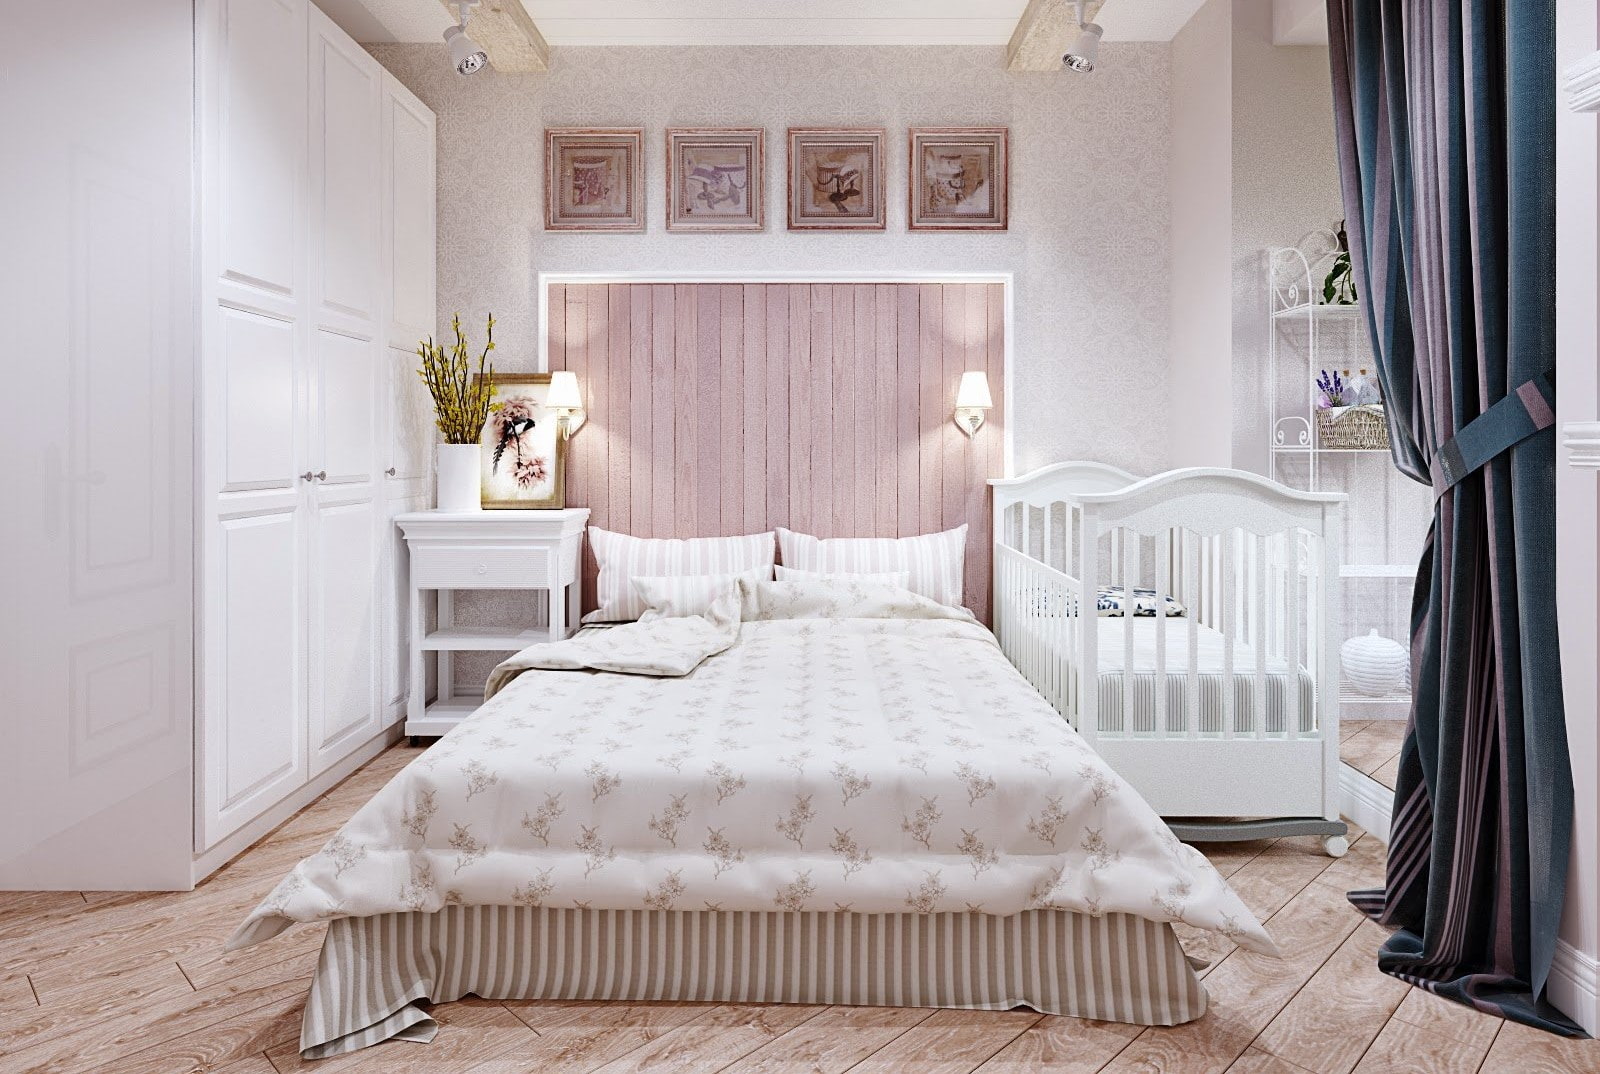 Спальня 12 кв м реальный дизайн с детской кроваткой - 81 фото